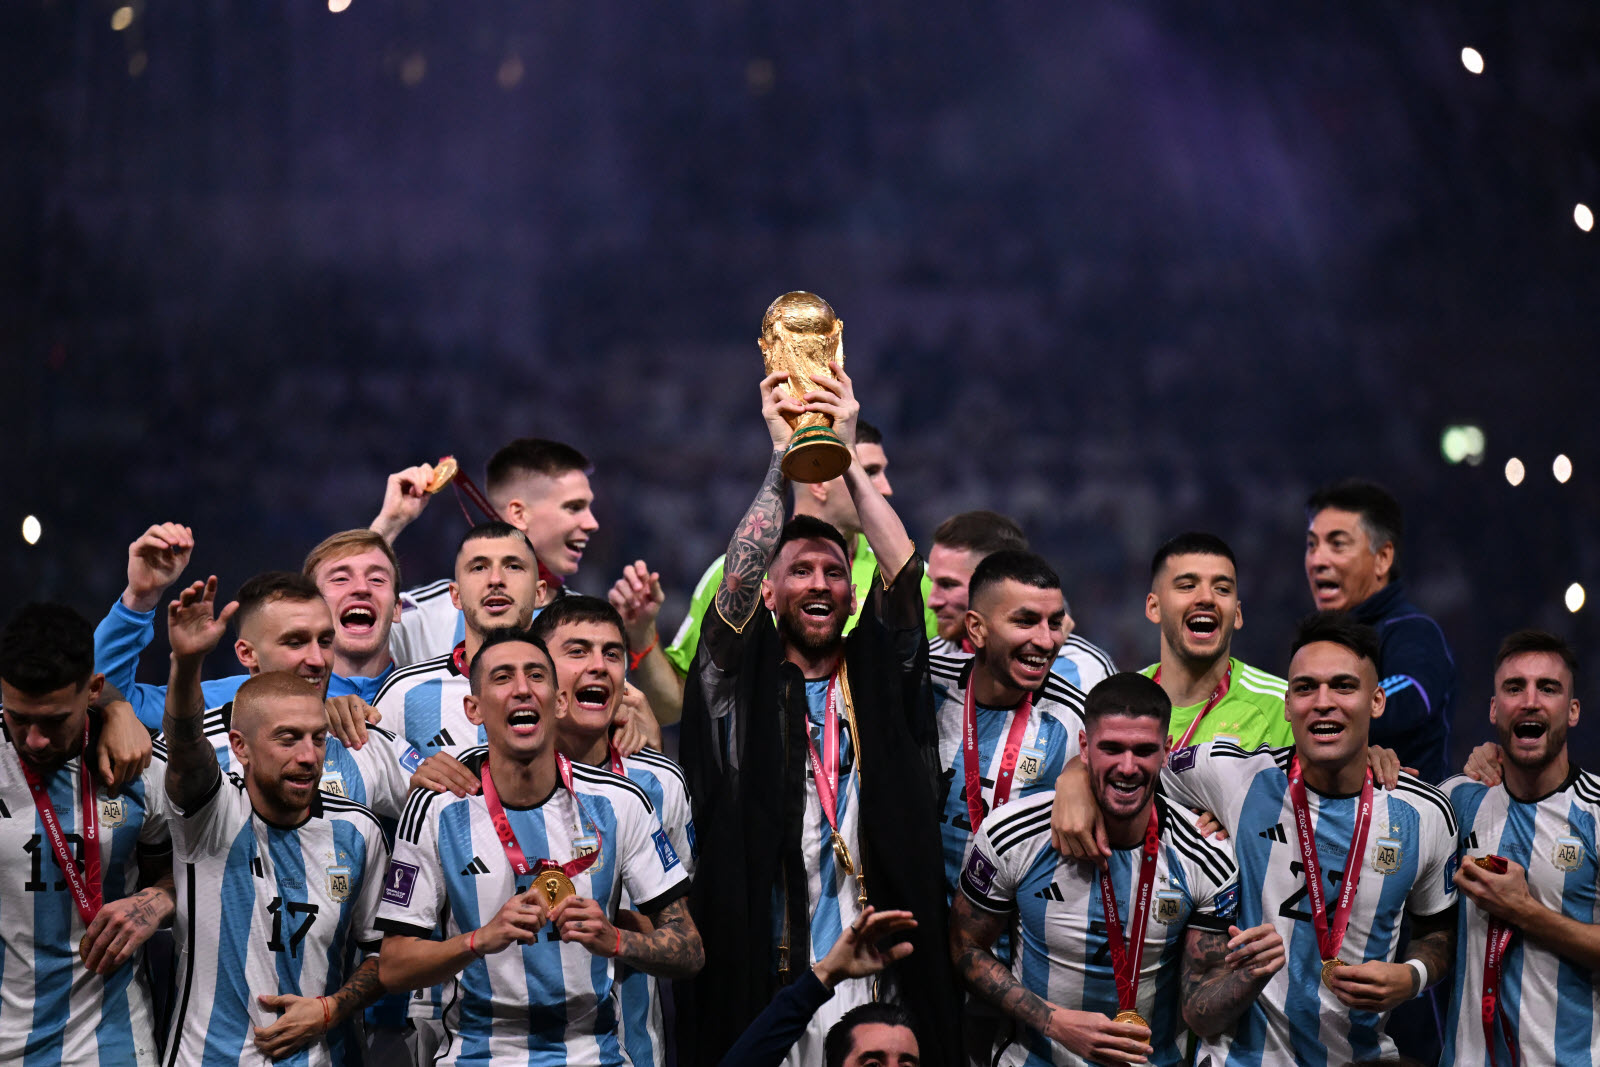 Ce n’est pas Messi, ce joueur argentin honoré par sa ville natale après le sacre